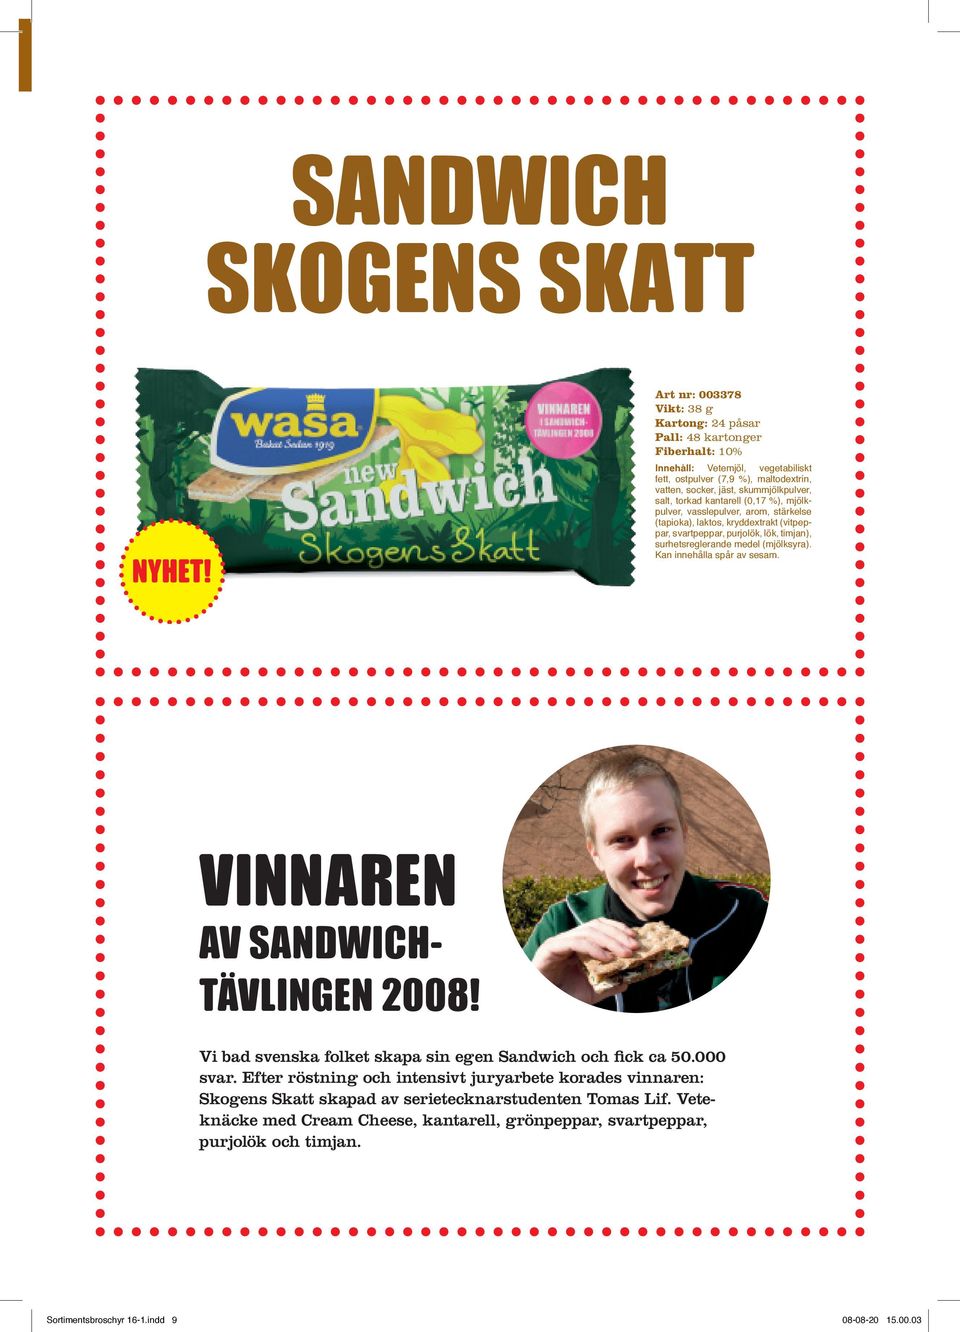 Kan innehålla spår av sesam. VINNAREN AV SANDWICH- TÄVLINGEN 2008! Vi bad svenska folket skapa sin egen Sandwich och fick ca 50.000 svar.